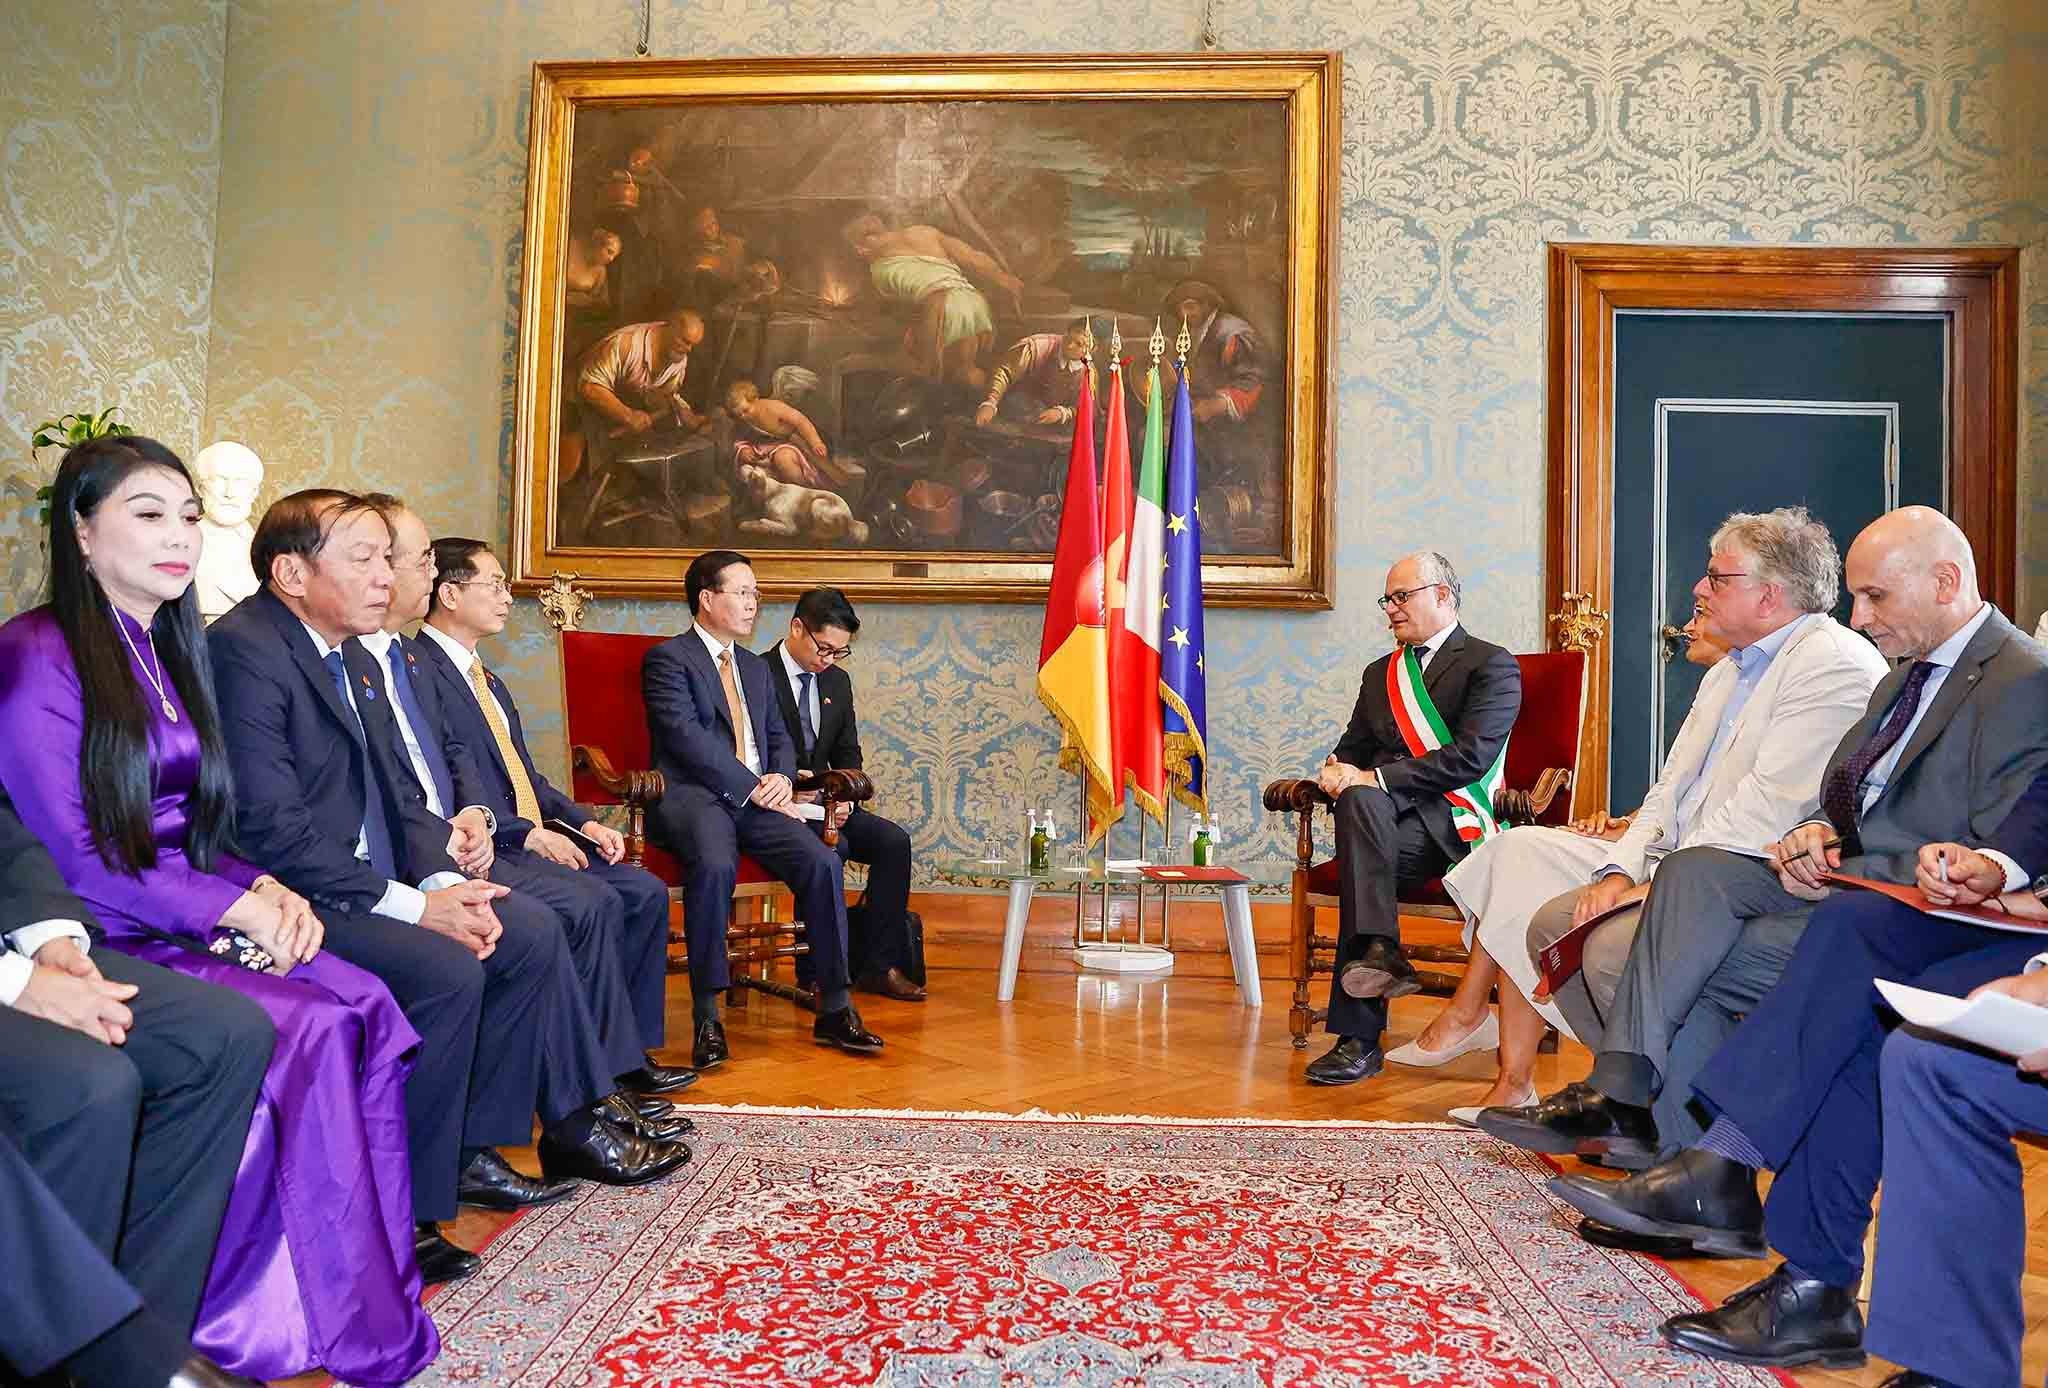 Điểm lại những hình ảnh ấn tượng của Chủ tịch nước và Phu nhân trong chuyến thăm Italy và Toà thánh Vatican